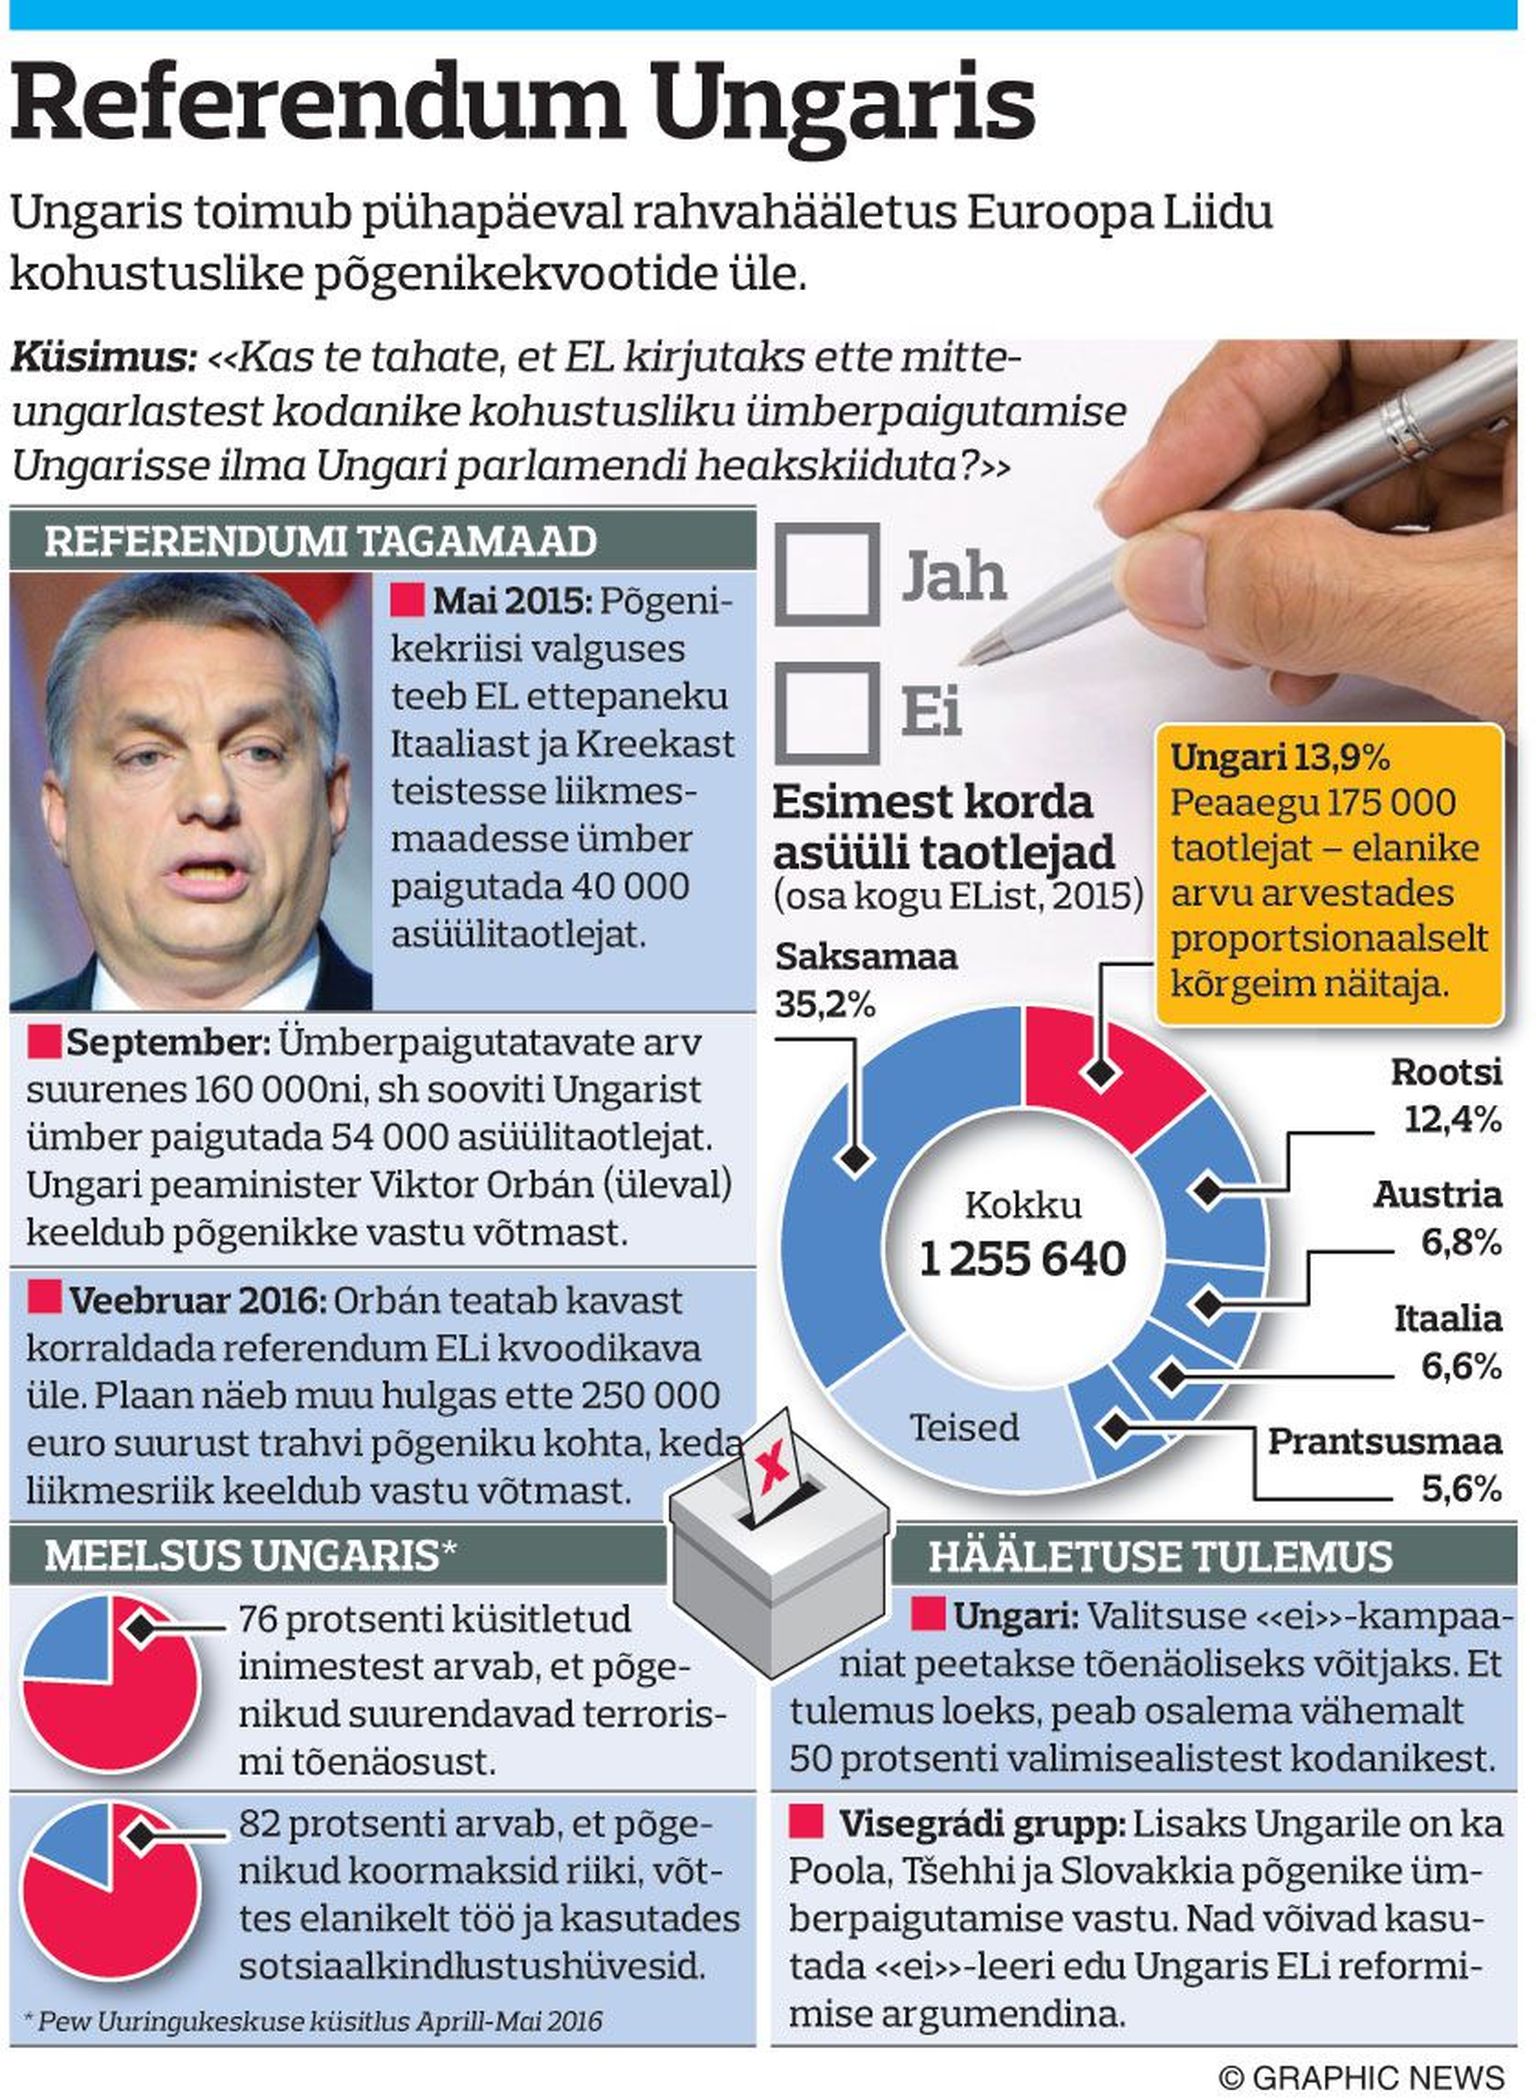 Graafik. Referendum Ungaris.